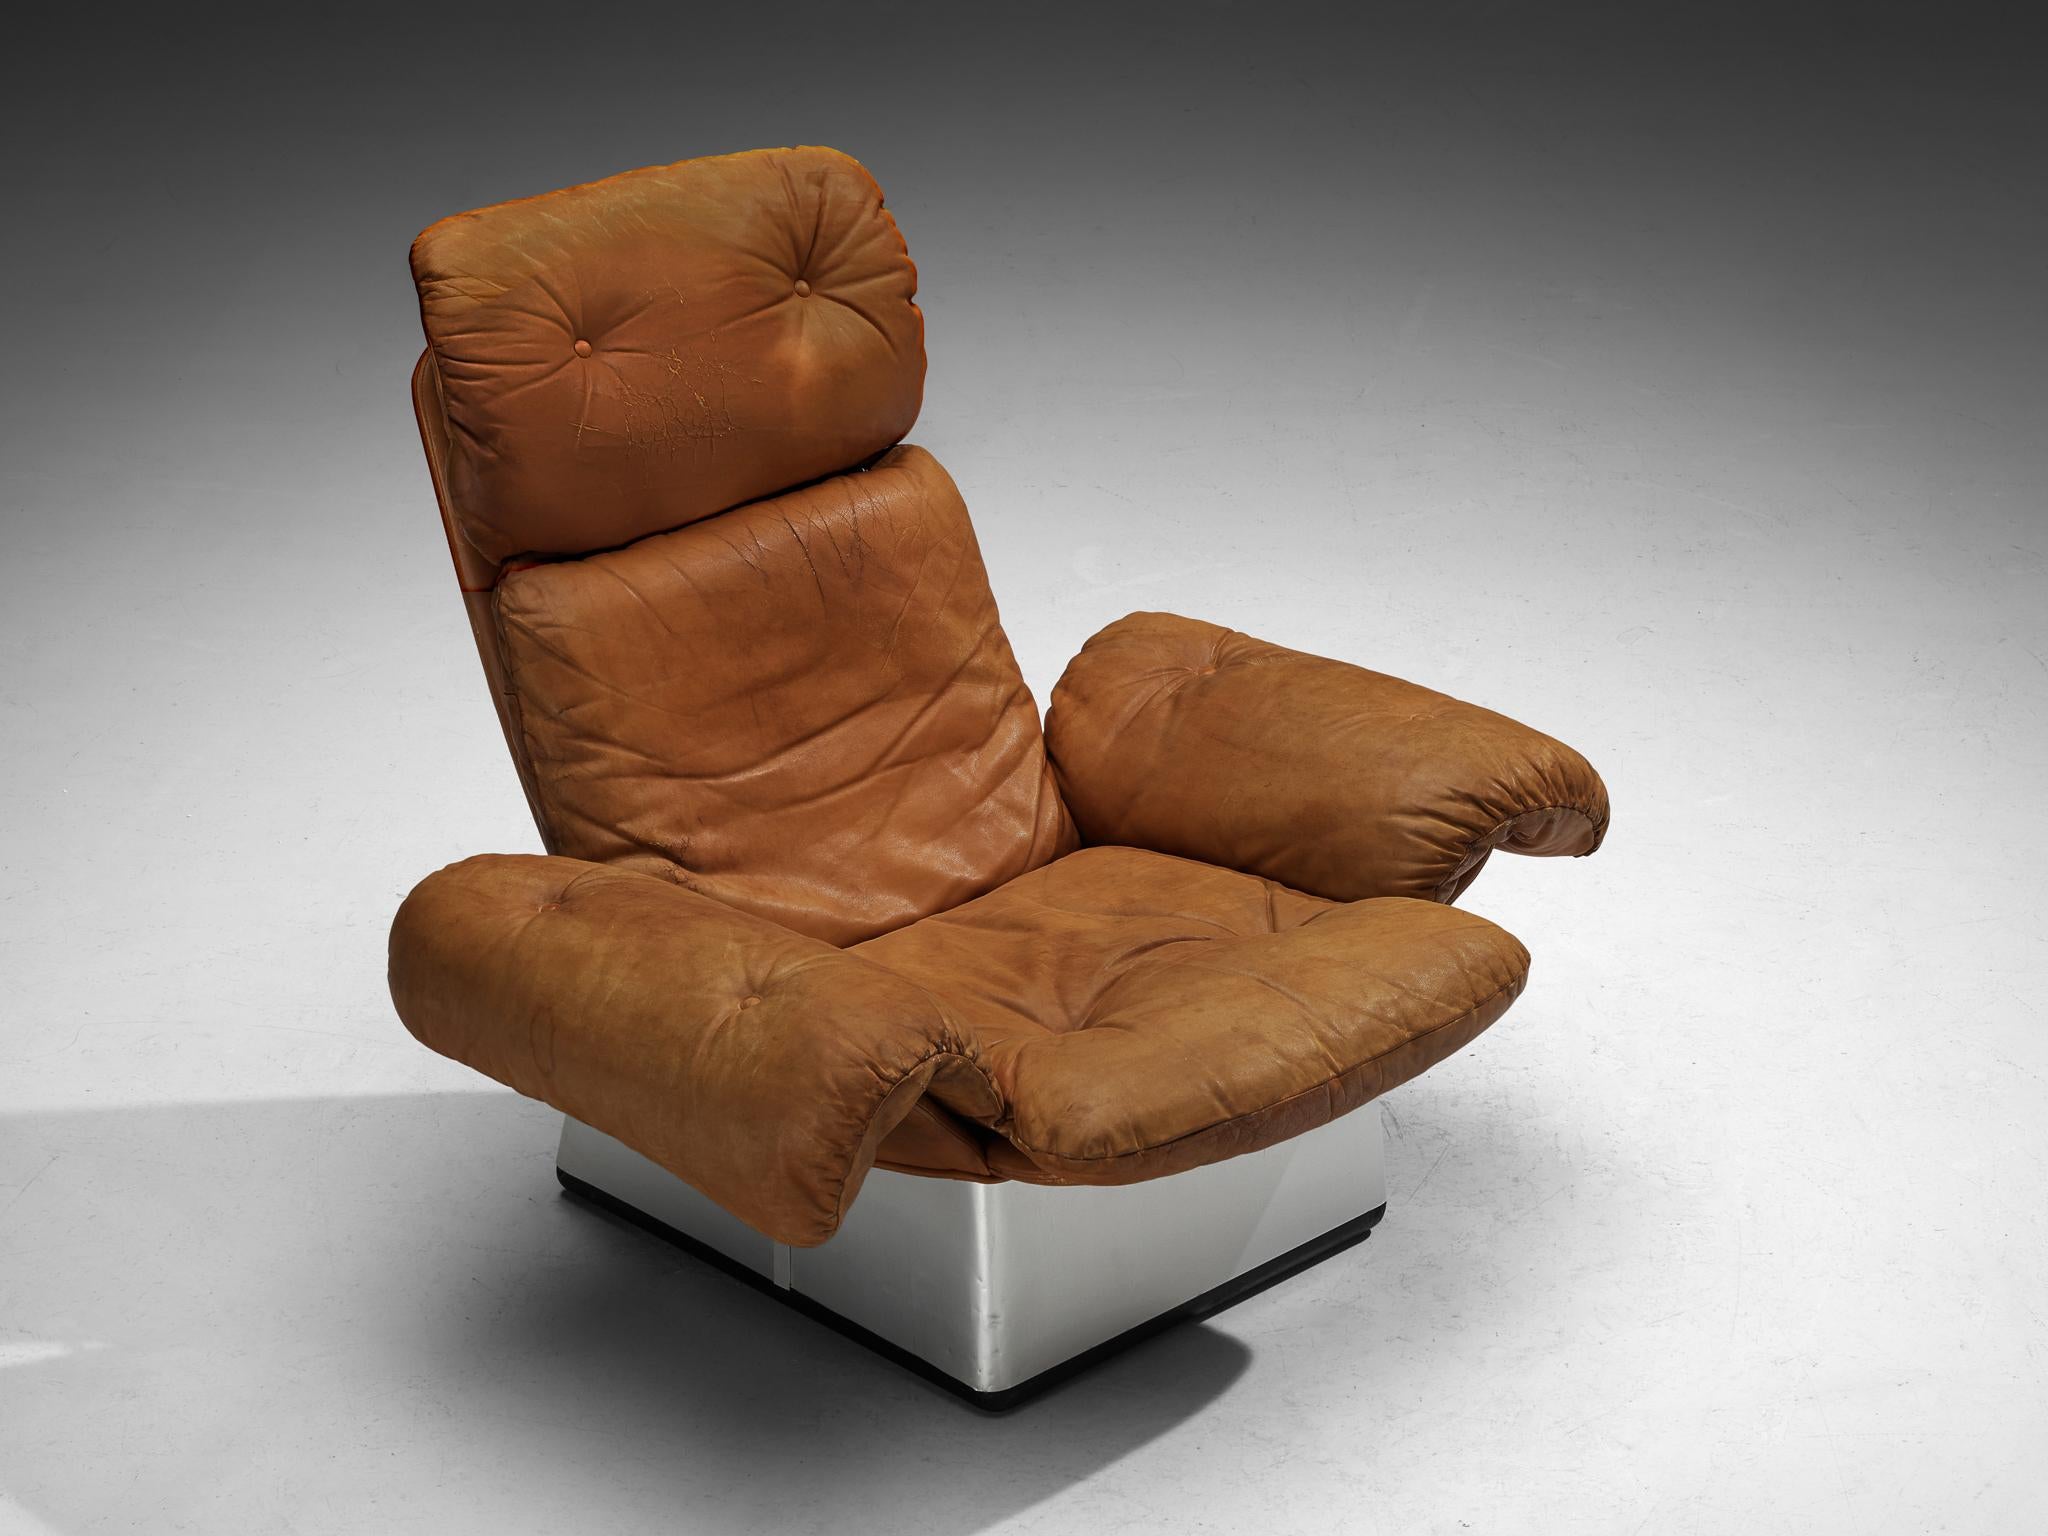 Loungesessel, Leder, Aluminium, Italien 1970er Jahre

Ein Loungesessel, der in den 1970er Jahren in Italien hergestellt wurde. Dieser Stuhl repräsentiert die Essenz des Möbeldesigns der 1970er Jahre, indem er über die strengen Konventionen der